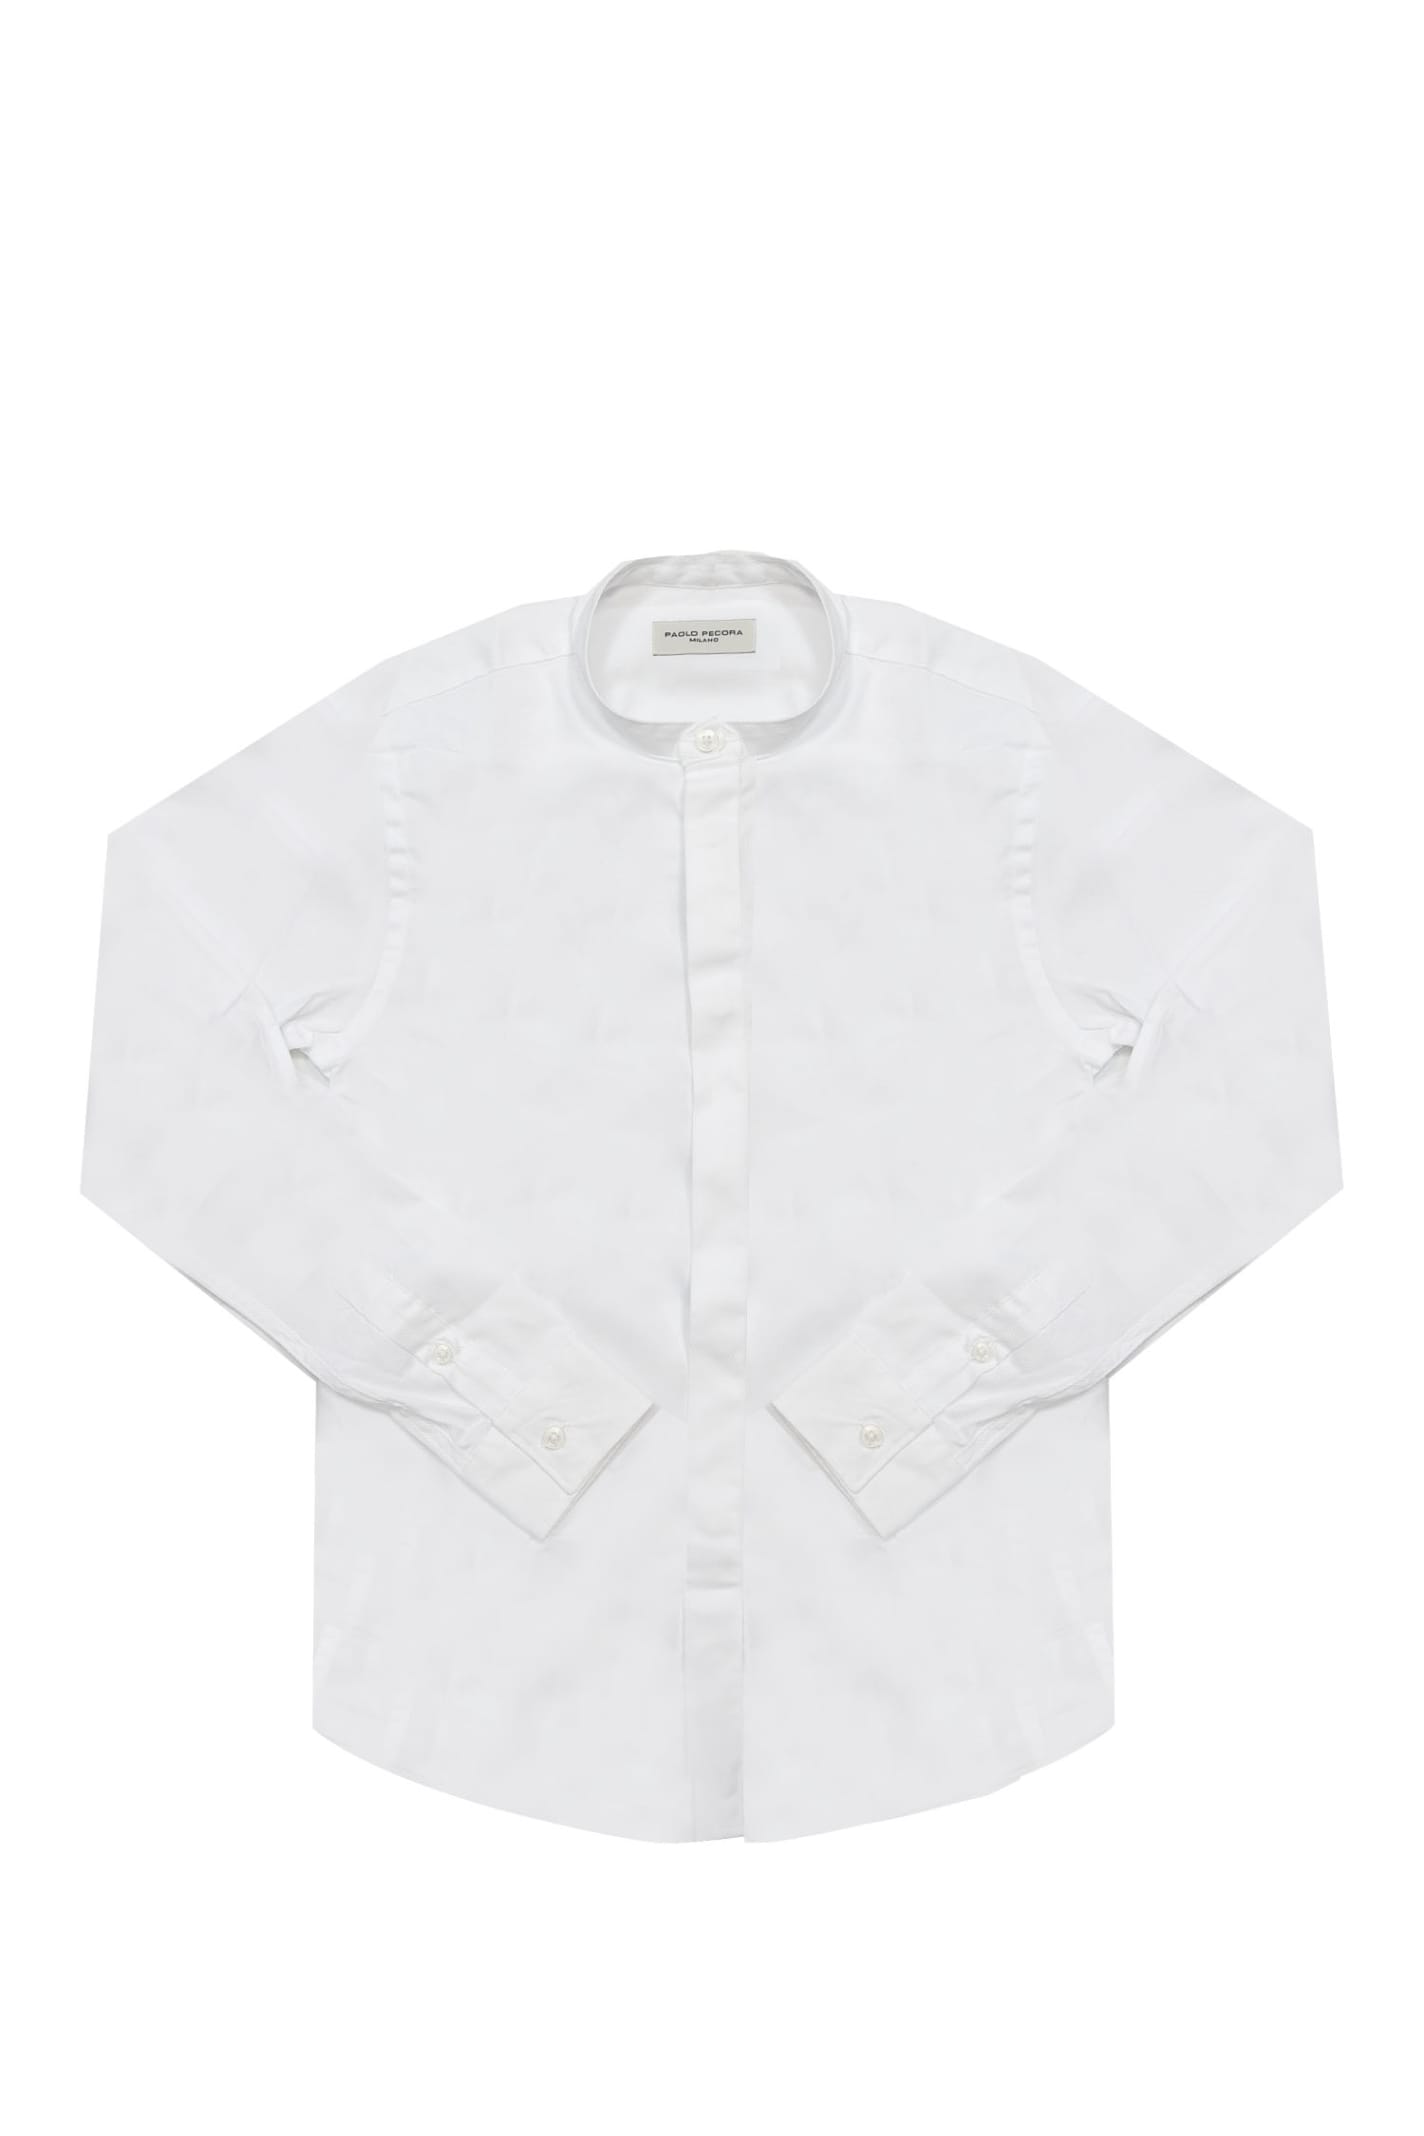 Paolo Pecora Kids' Cotton Shirt In White